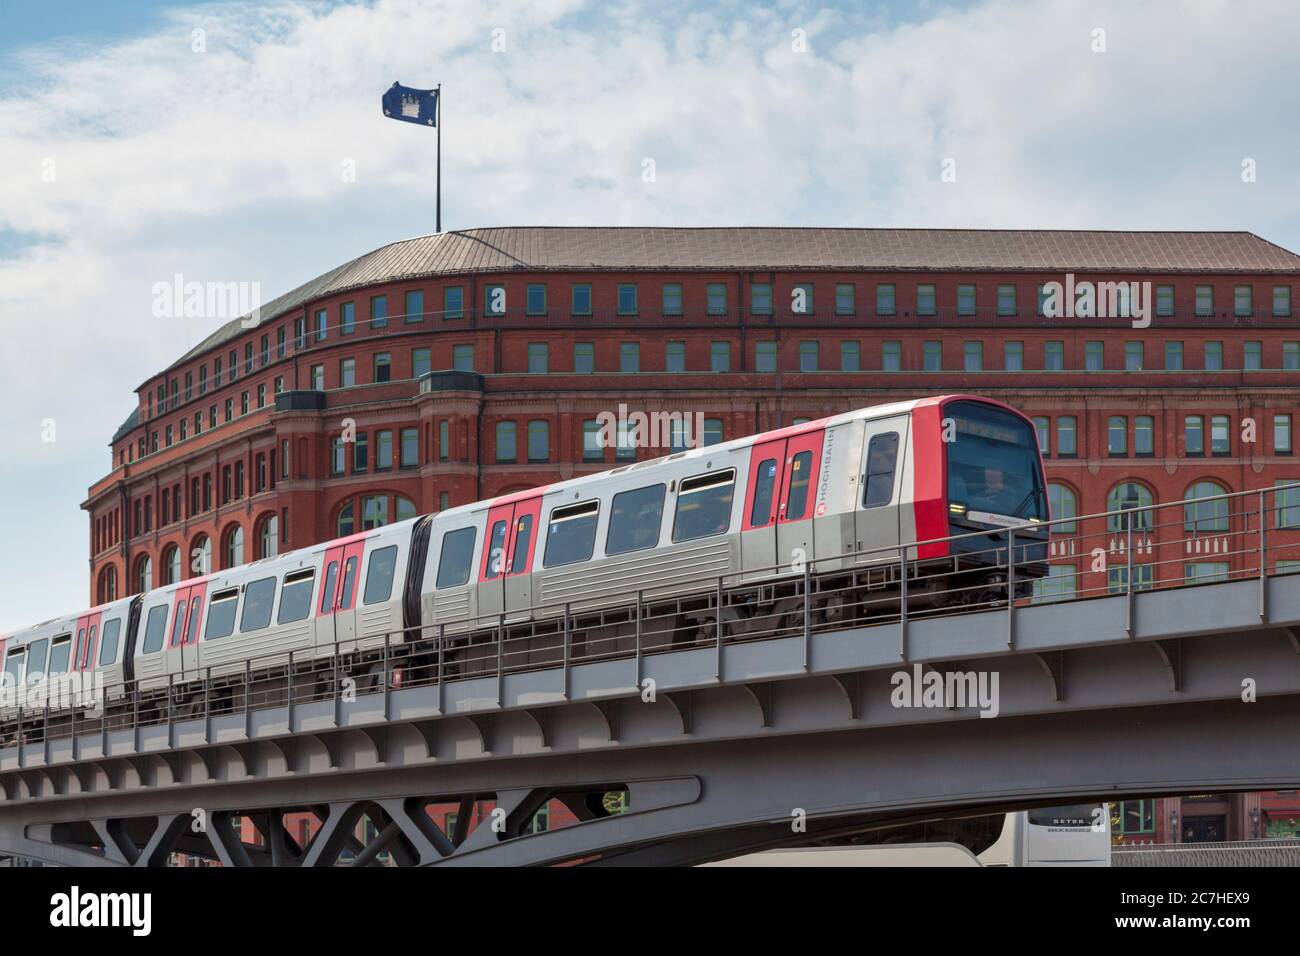 Hambourg, Allemagne - juin 30 2019 : métro de la Hamburger Hochbahn AG passant sur un pont près de la rivière. Banque D'Images